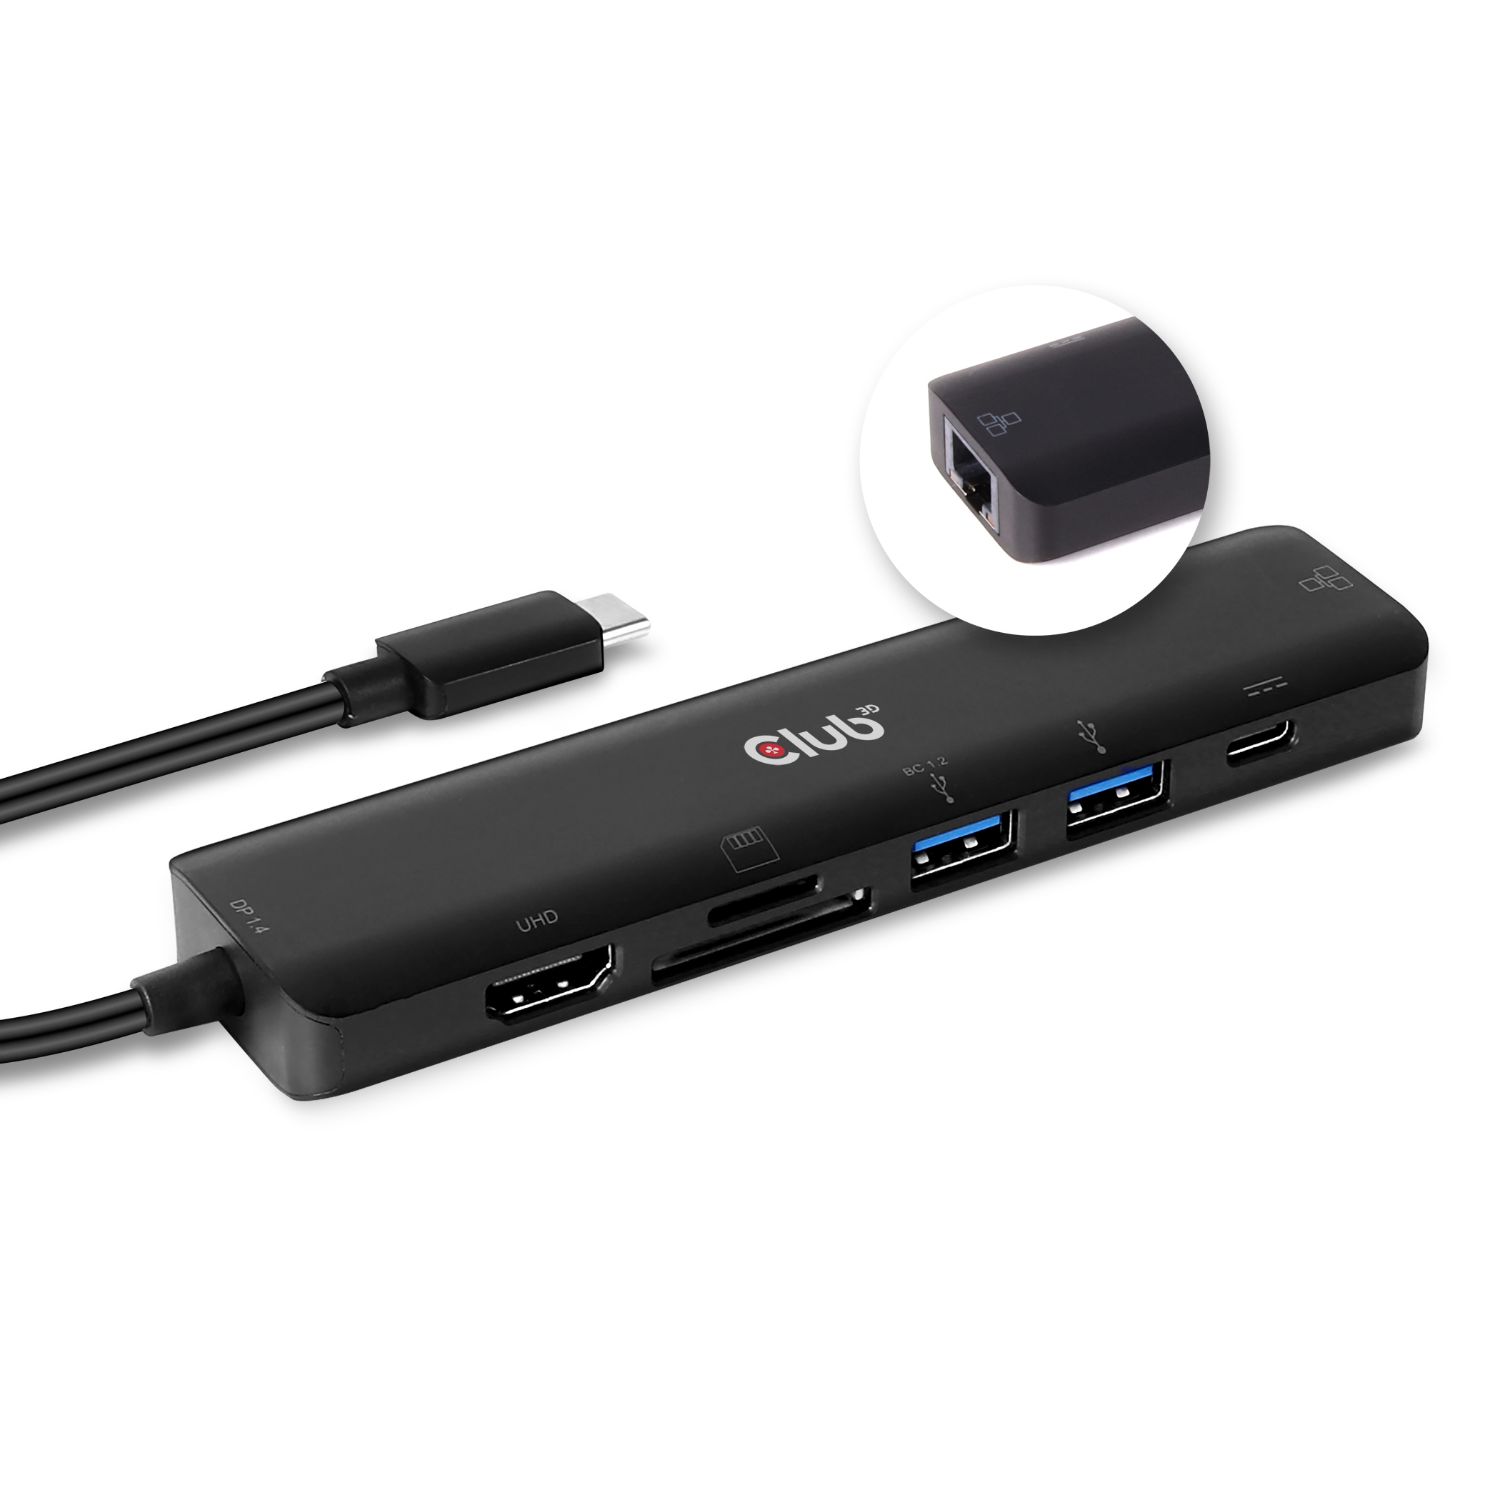 CSV-1592 - Dock Club 3D USB-C a HDMI/2xUSB-A/RJ45/USB-C (CSV-1592)